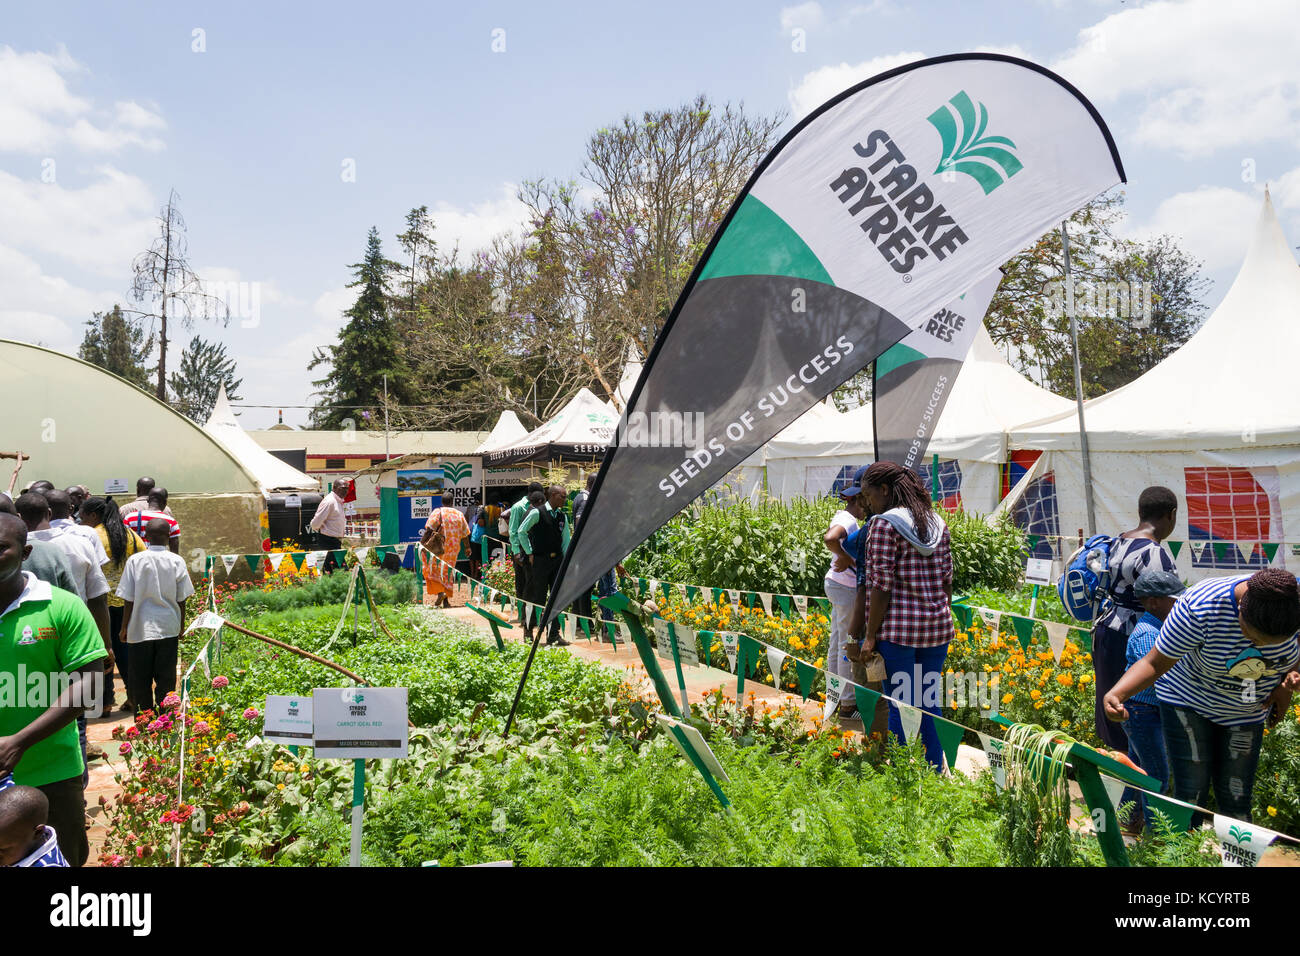 Starke Ayres la agricultura alimentaria exhibición con personas, Feria Internacional de Nairobi, Kenia Foto de stock